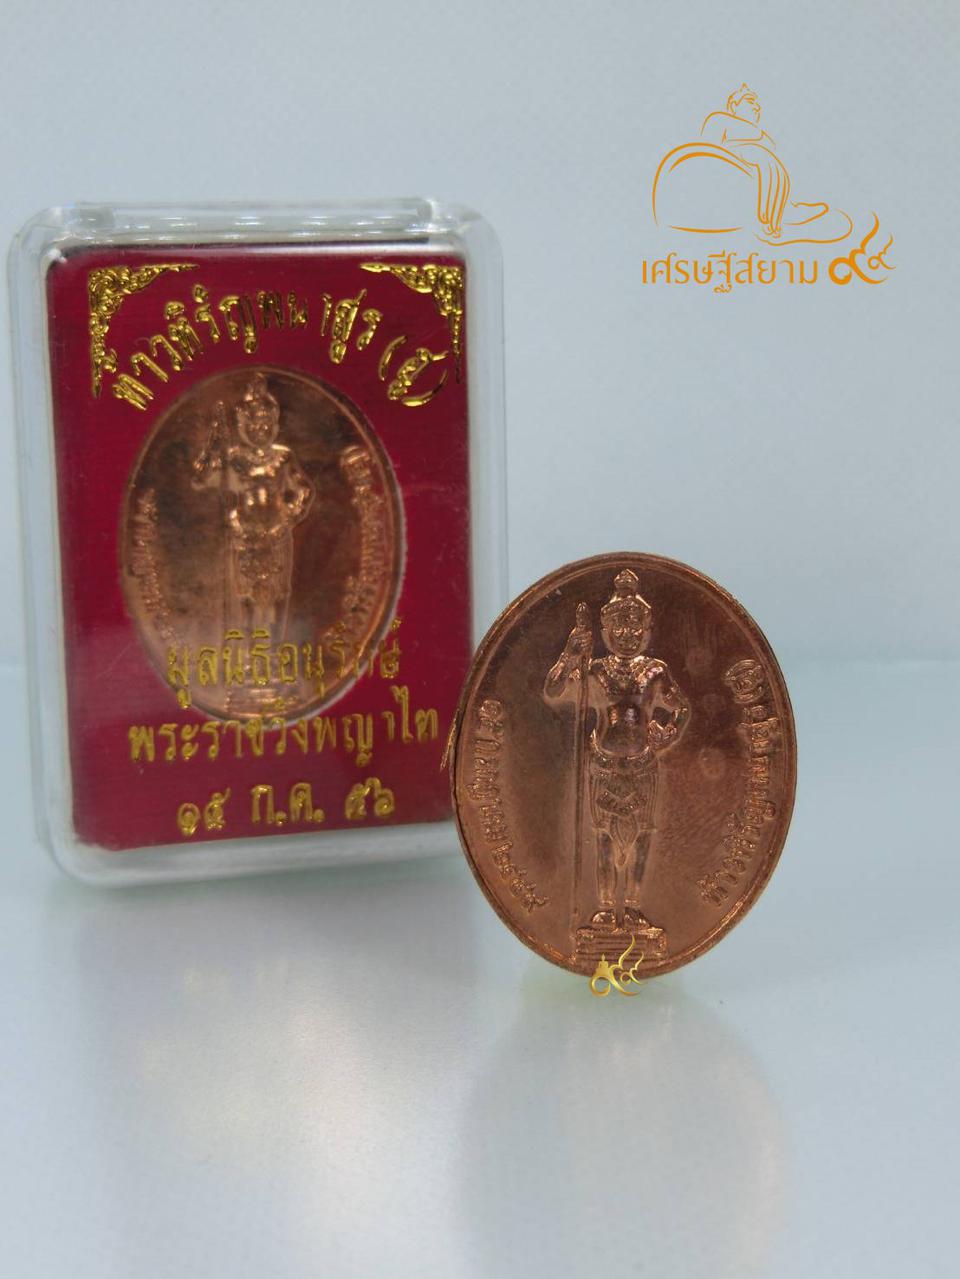 เหรียญท้าวหิรัญพนาสูร ท่านท้าวฮู พระราชวังพญาไท รุ่น ๑๐๗ ปี พ.ศ. ๒๕๕๖  เนื้อทองแดง